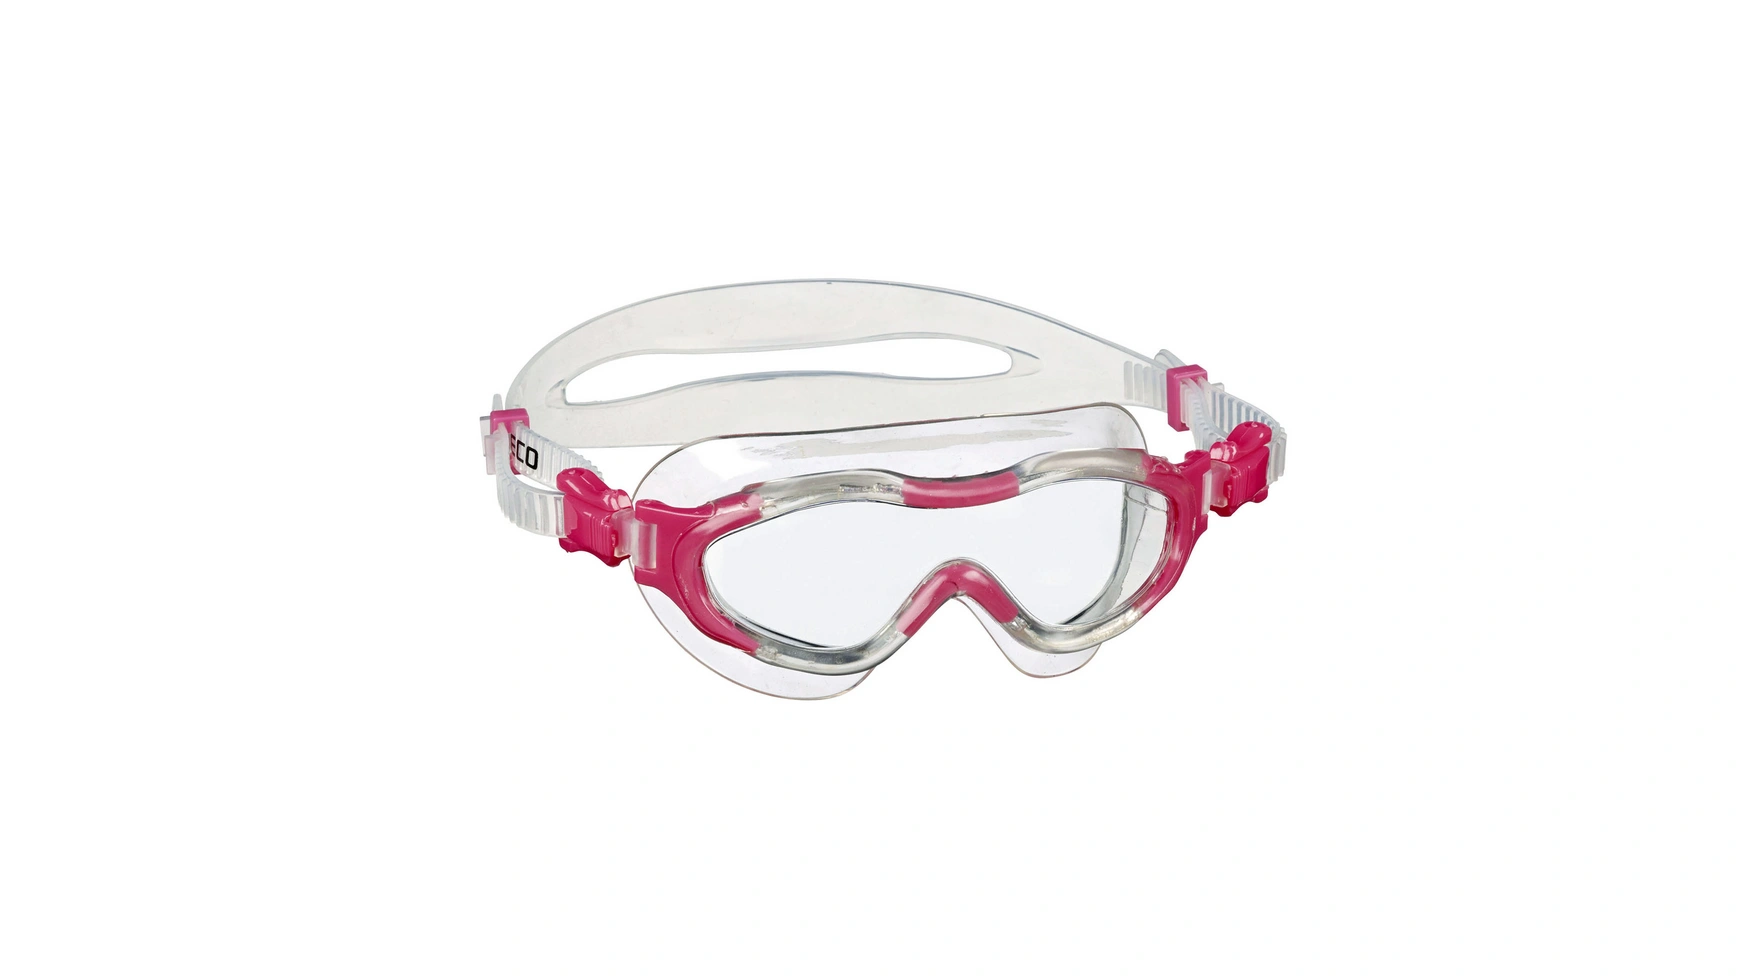 Beco Alicante 4+ Мягкие панорамные очки для детей от 4 лет и старше 55602 очки для плавания play 3 10 лет blue